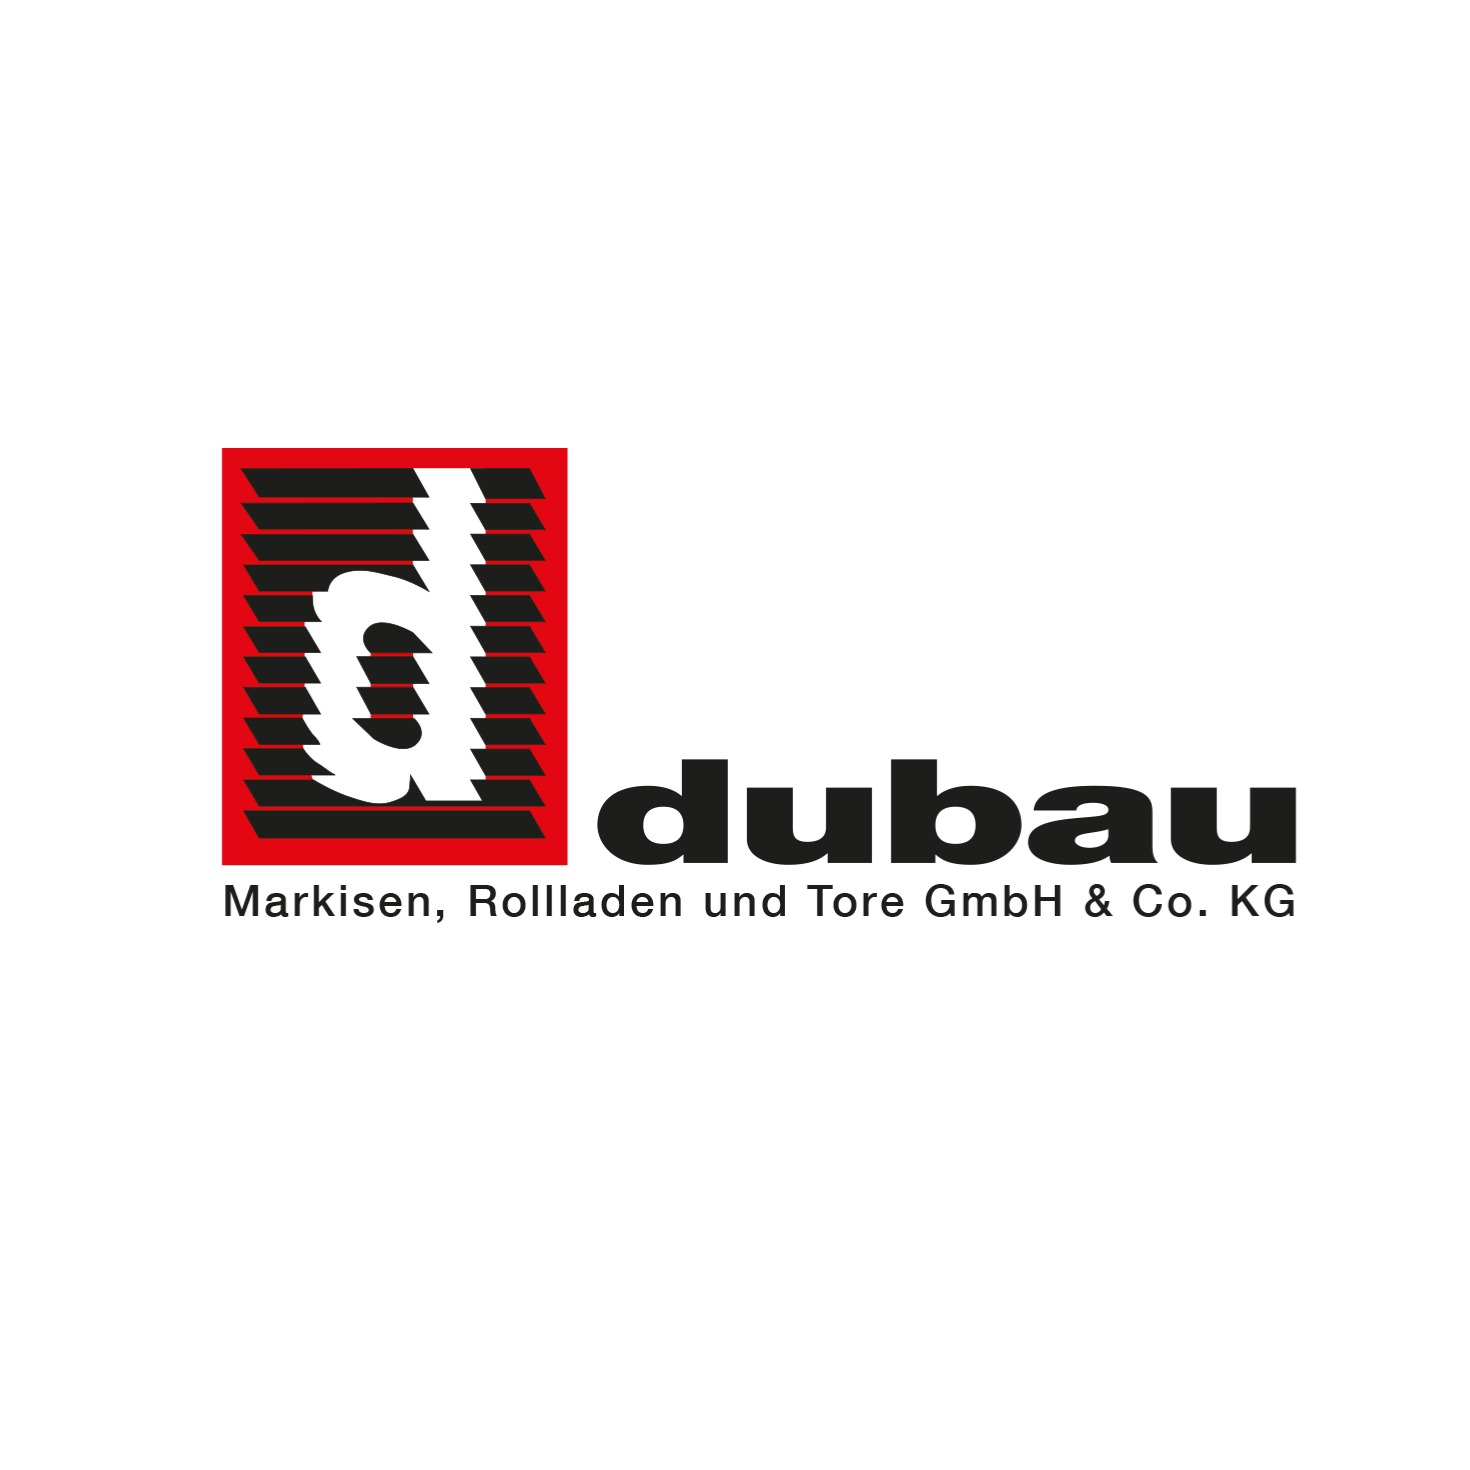 Dubau Markisen Rollladen und Tore GmbH & Co. KG in Kiel - Logo